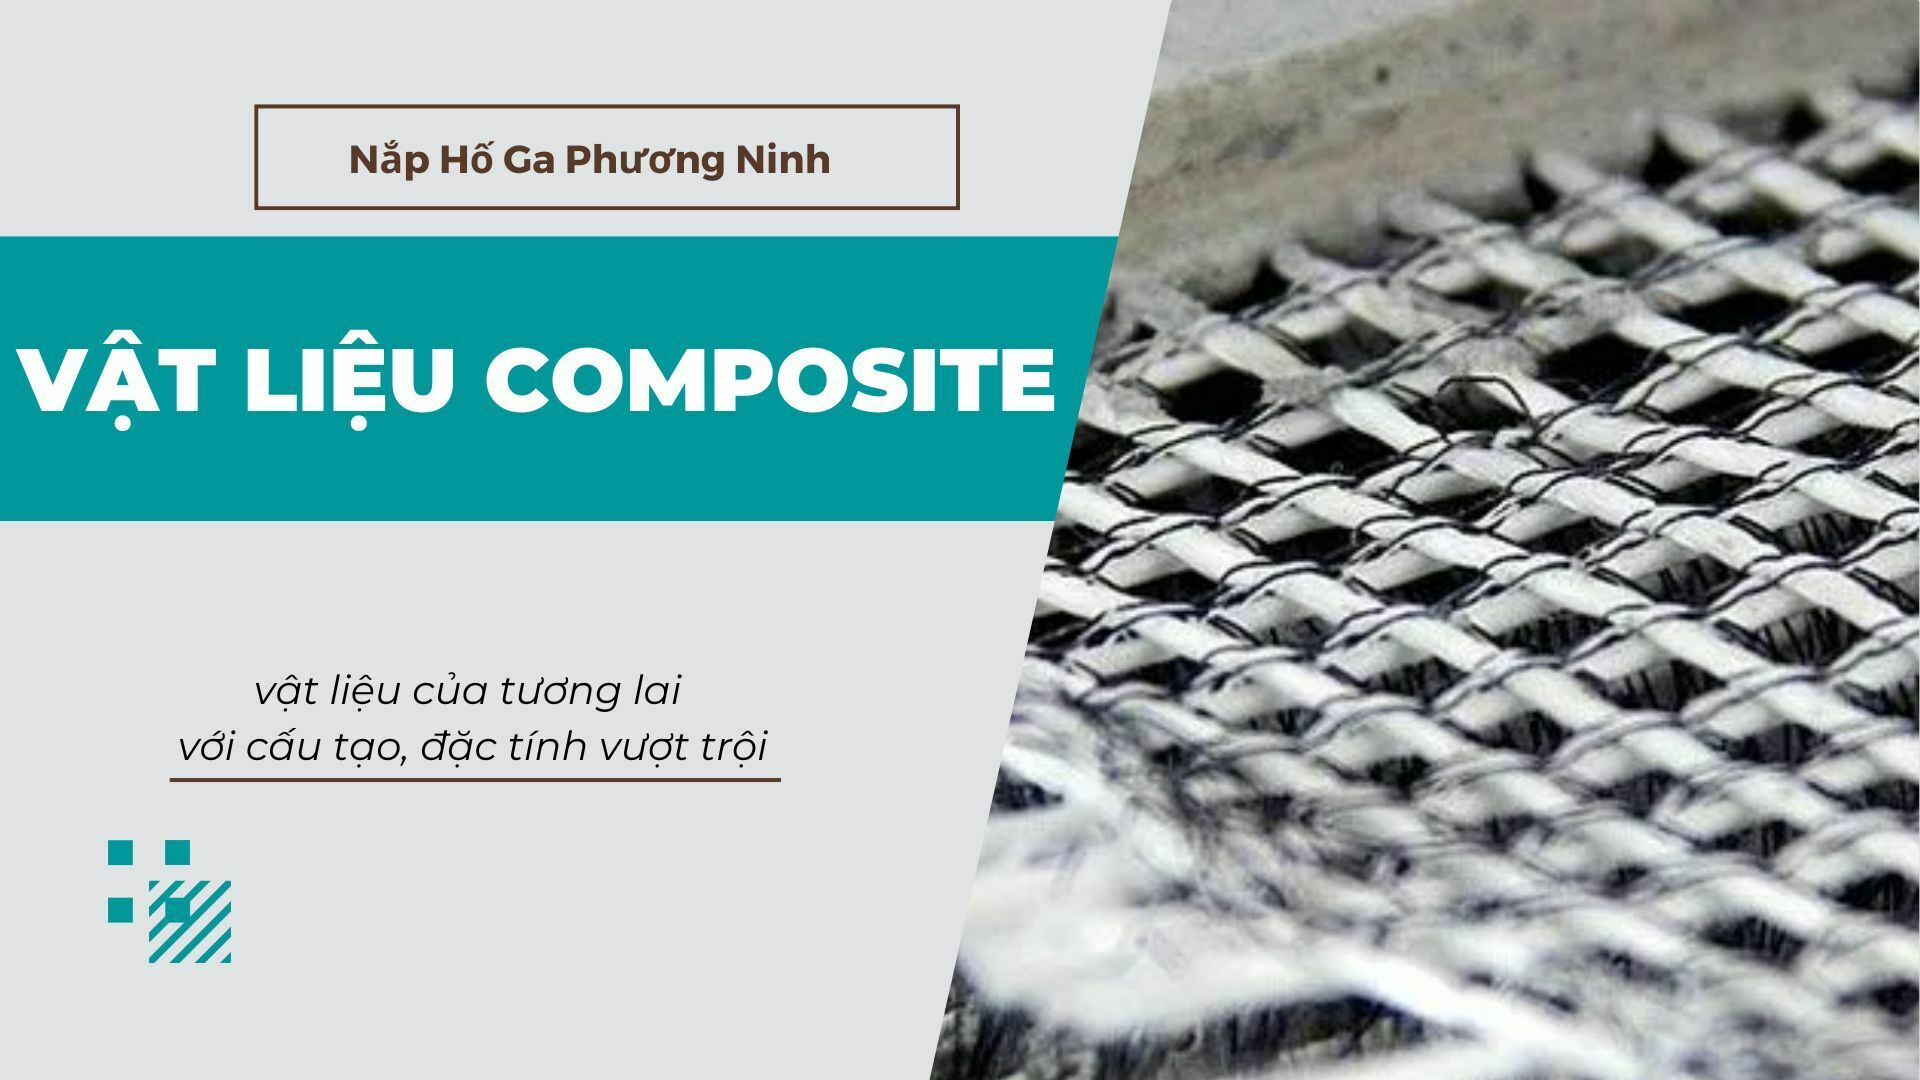 Vật liệu composite nền kim loại là gì?